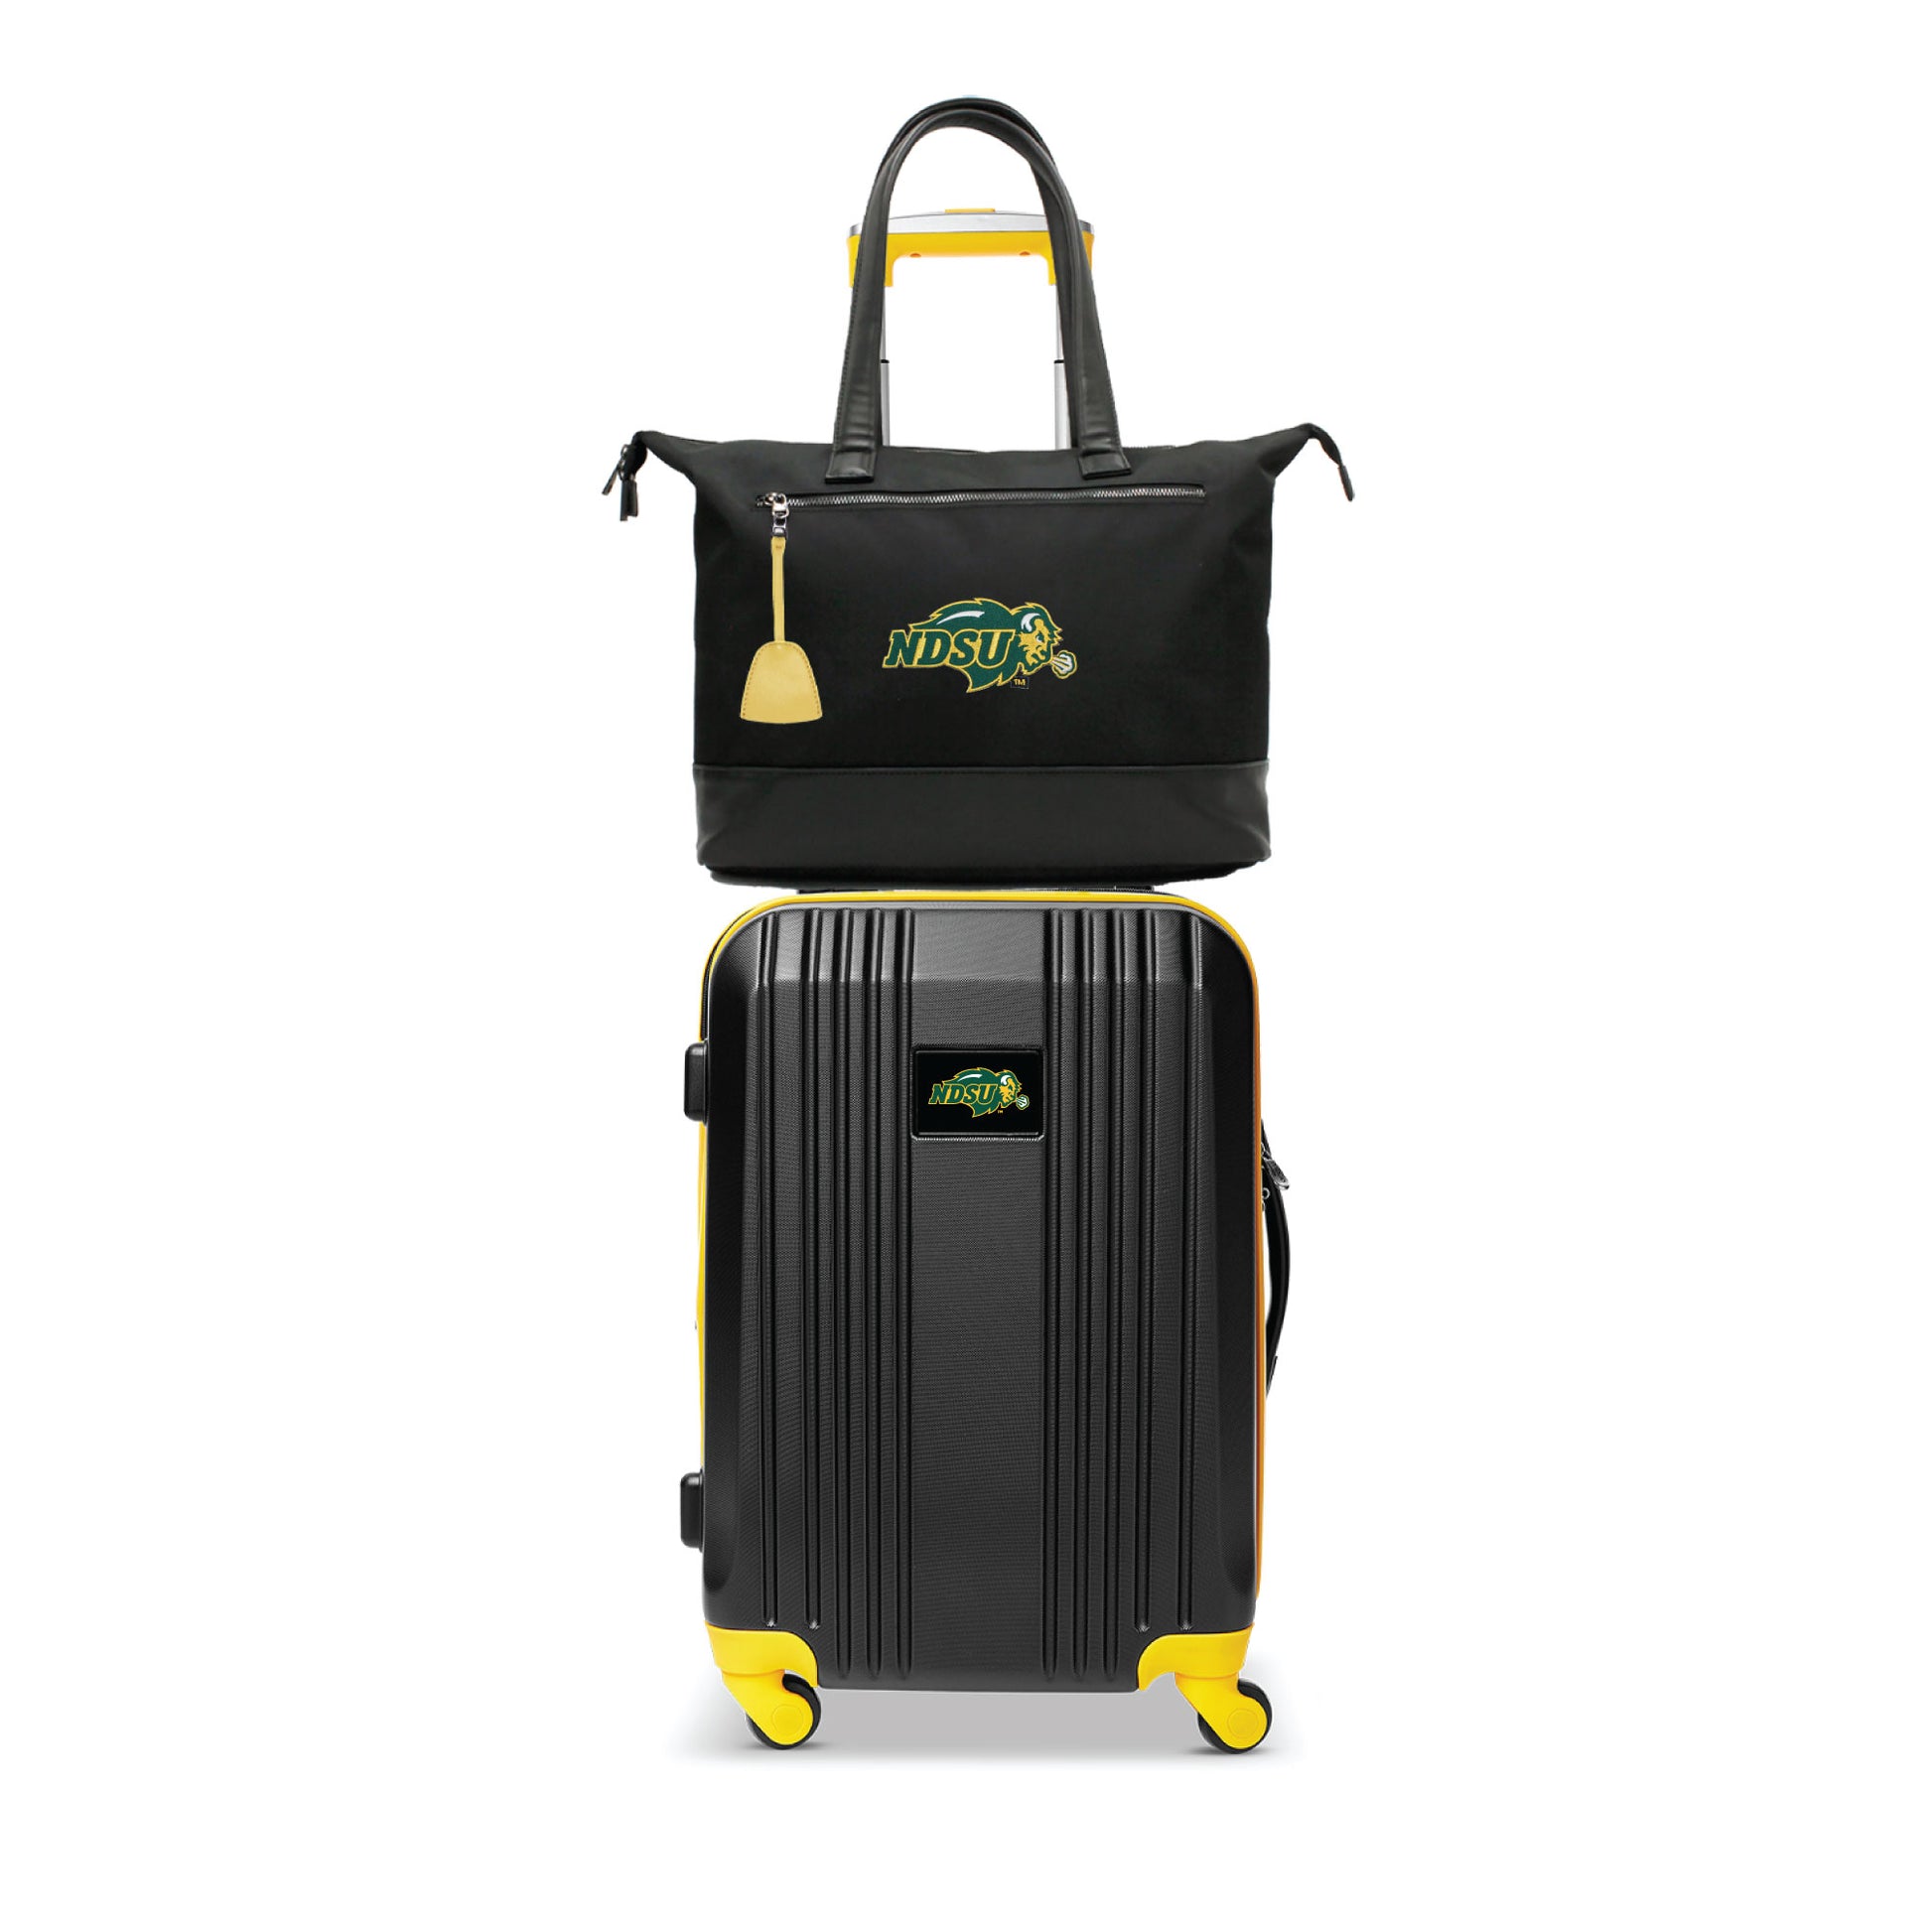 North Dakota State Bison Premium Laptop Tote Bag and Luggage Set